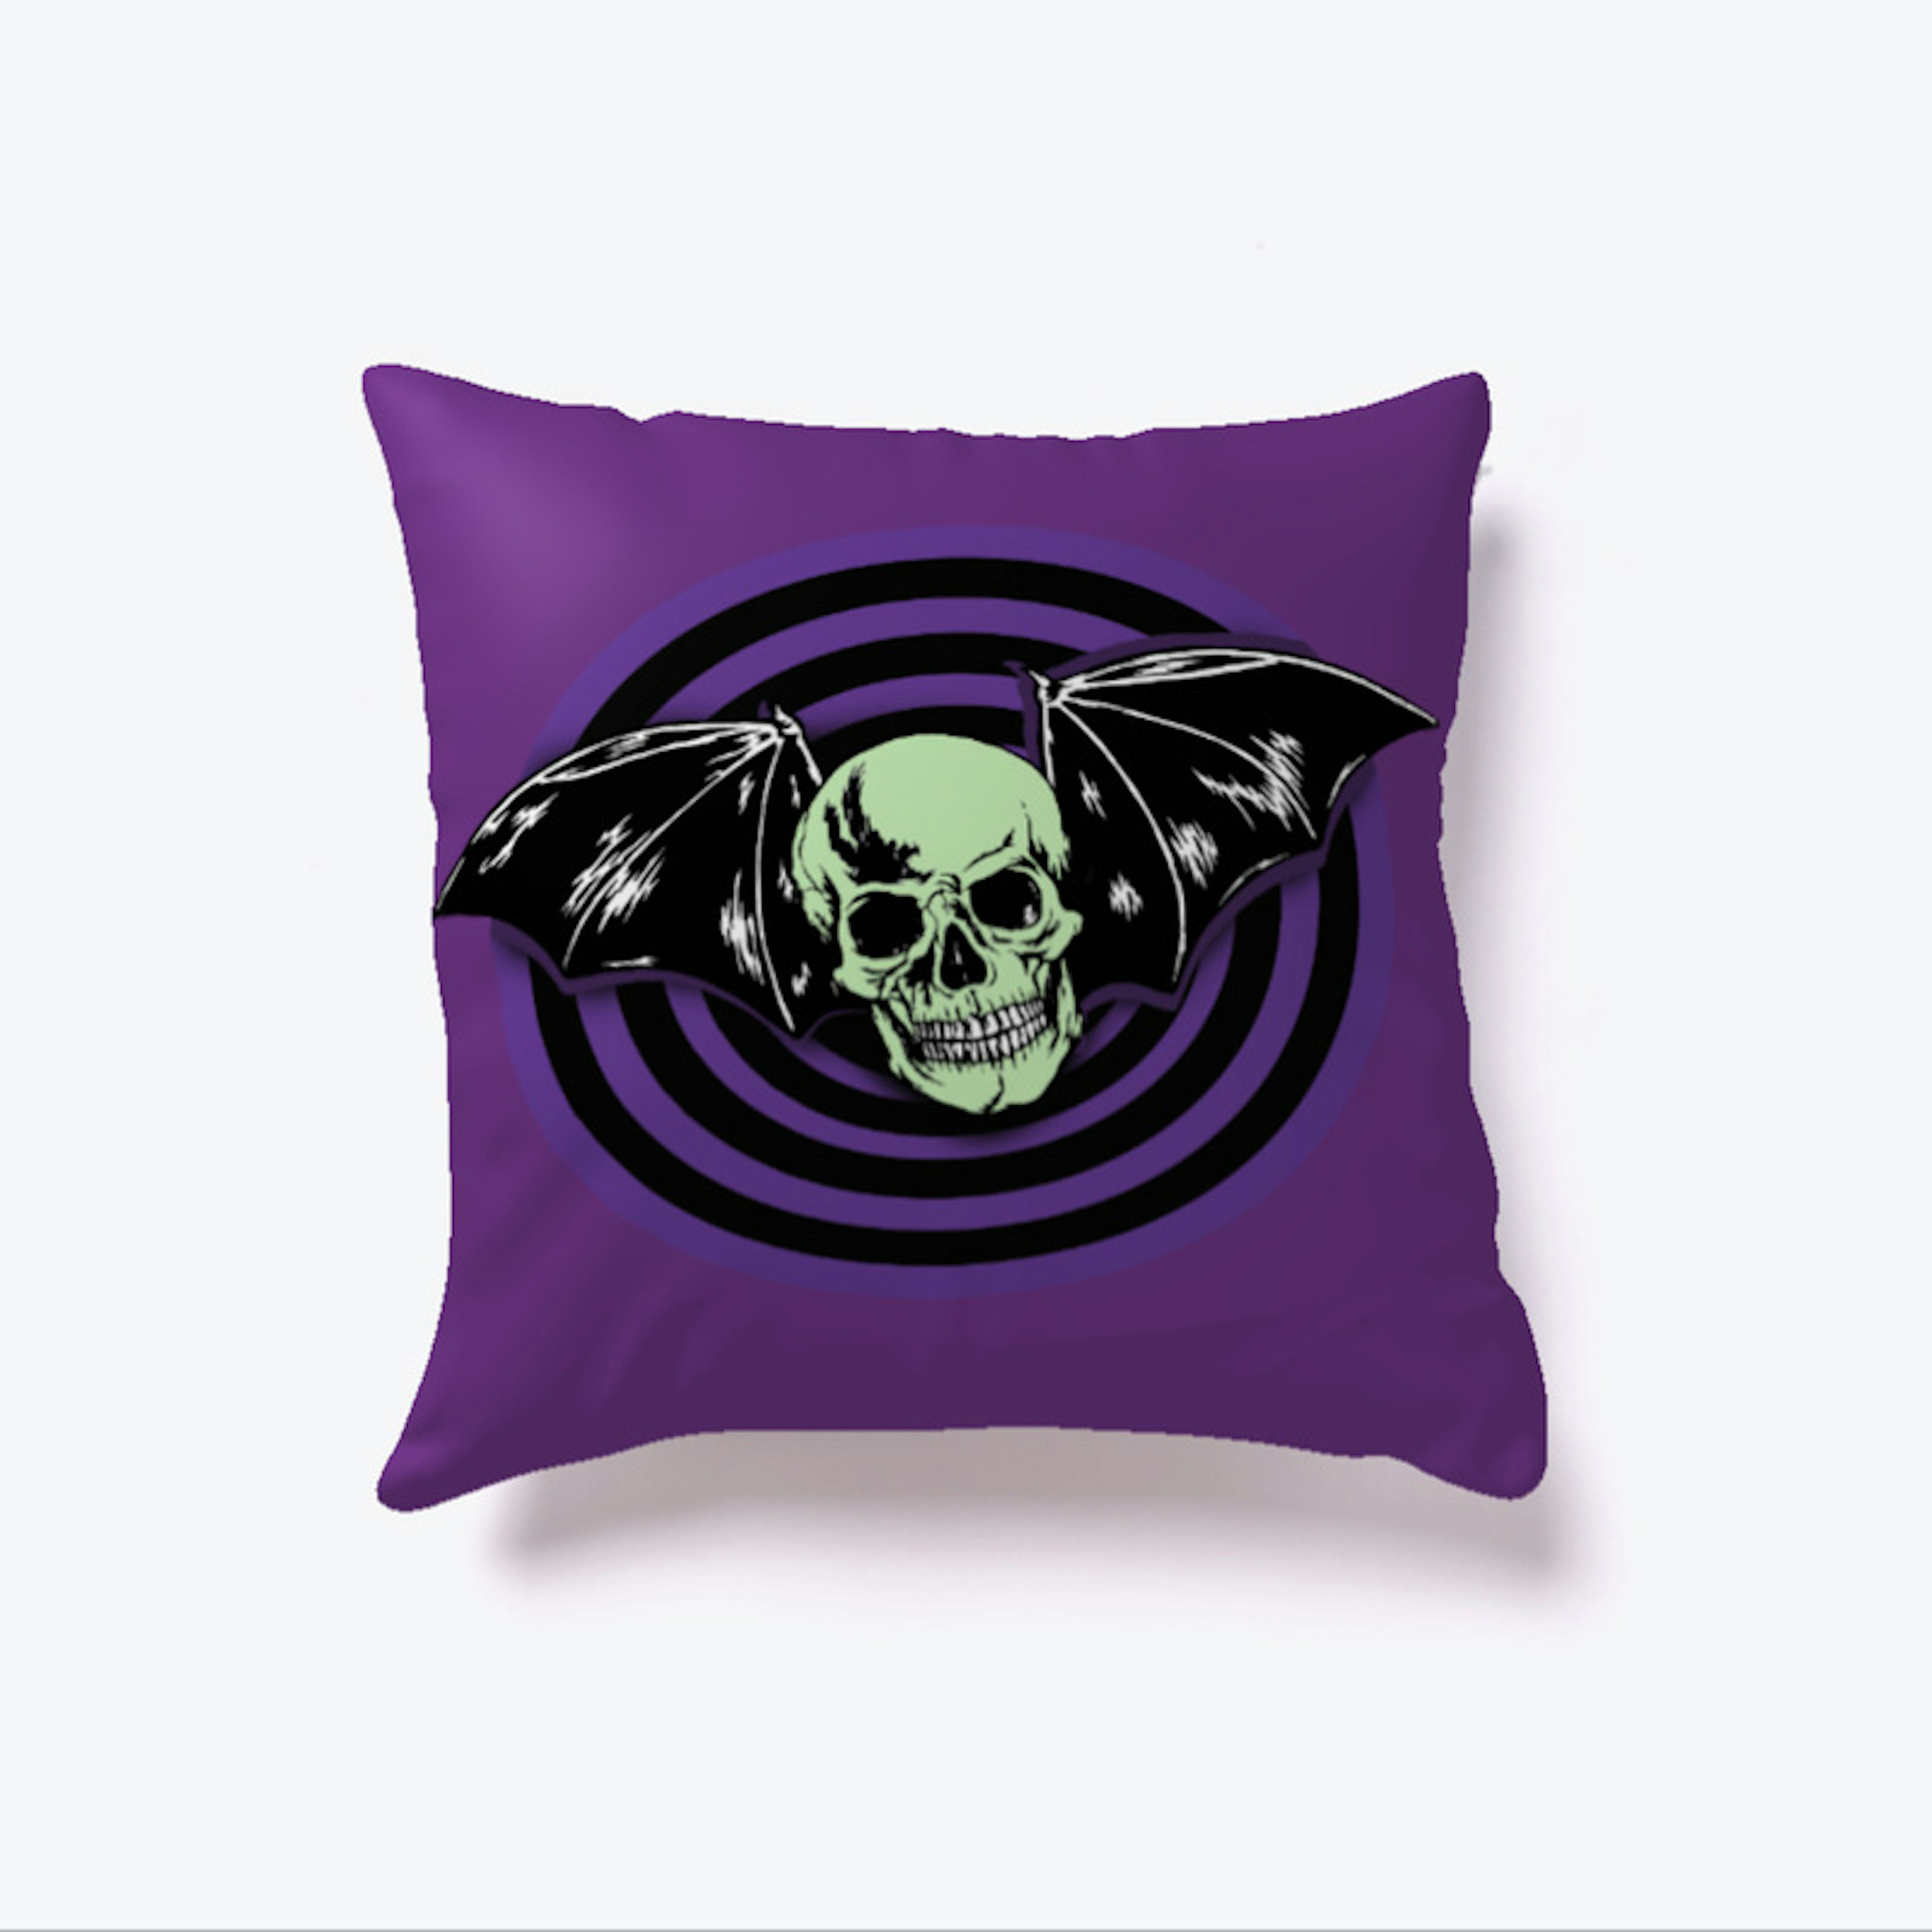 Pyscho Punk Halloween Skull Bat Pillow